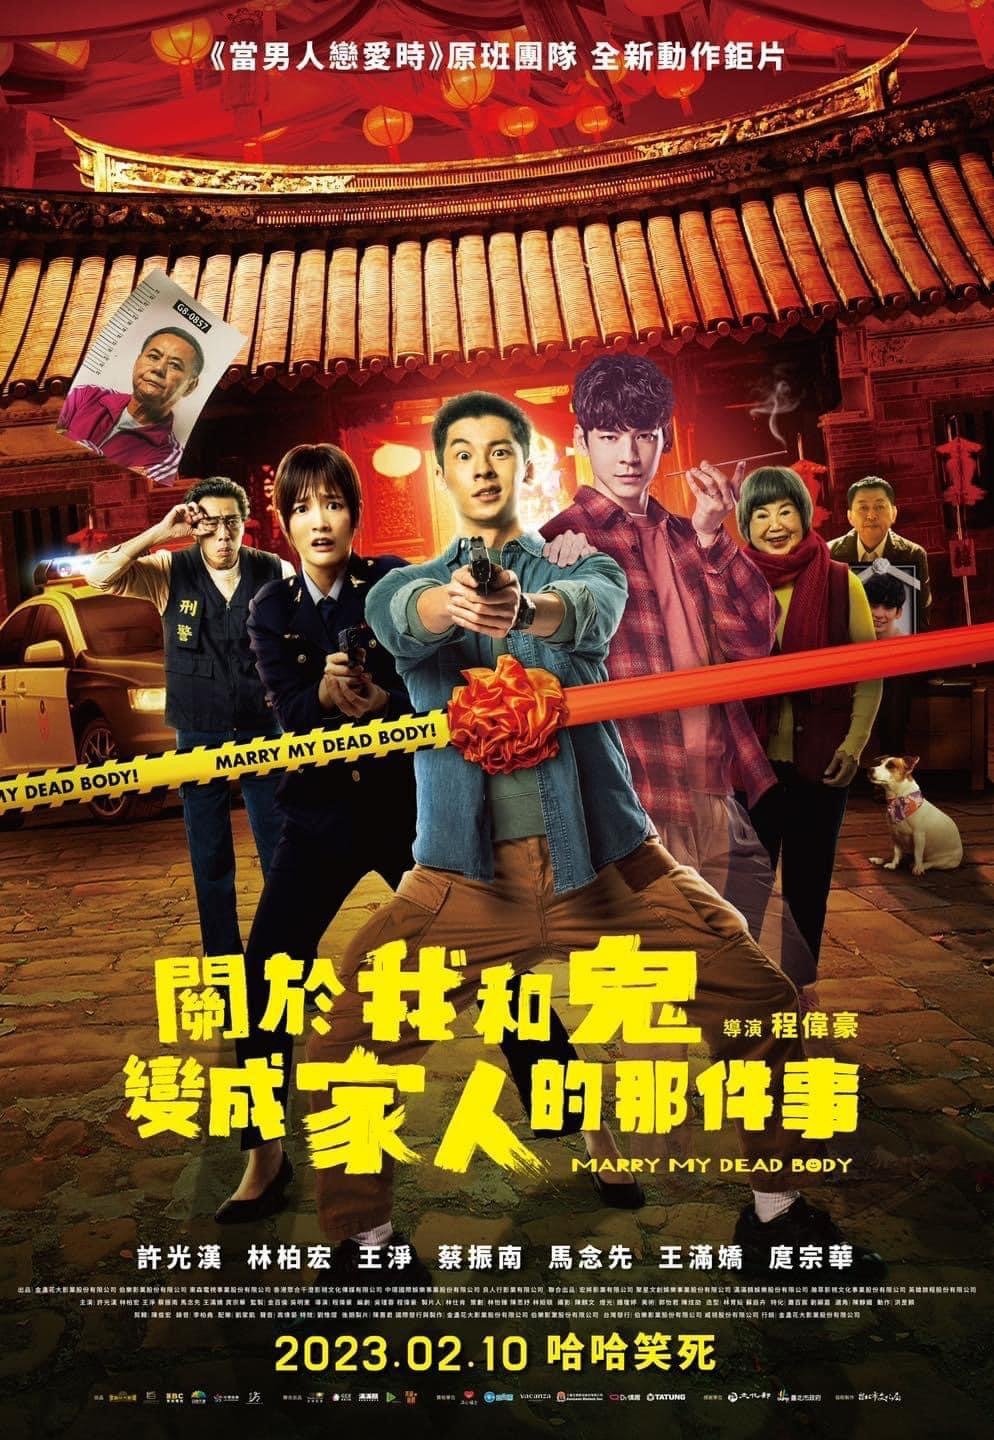 Extra Large Movie Poster Image for Guan yu wo han gui bian cheng jia ren de na jian shi (#3 of 3)